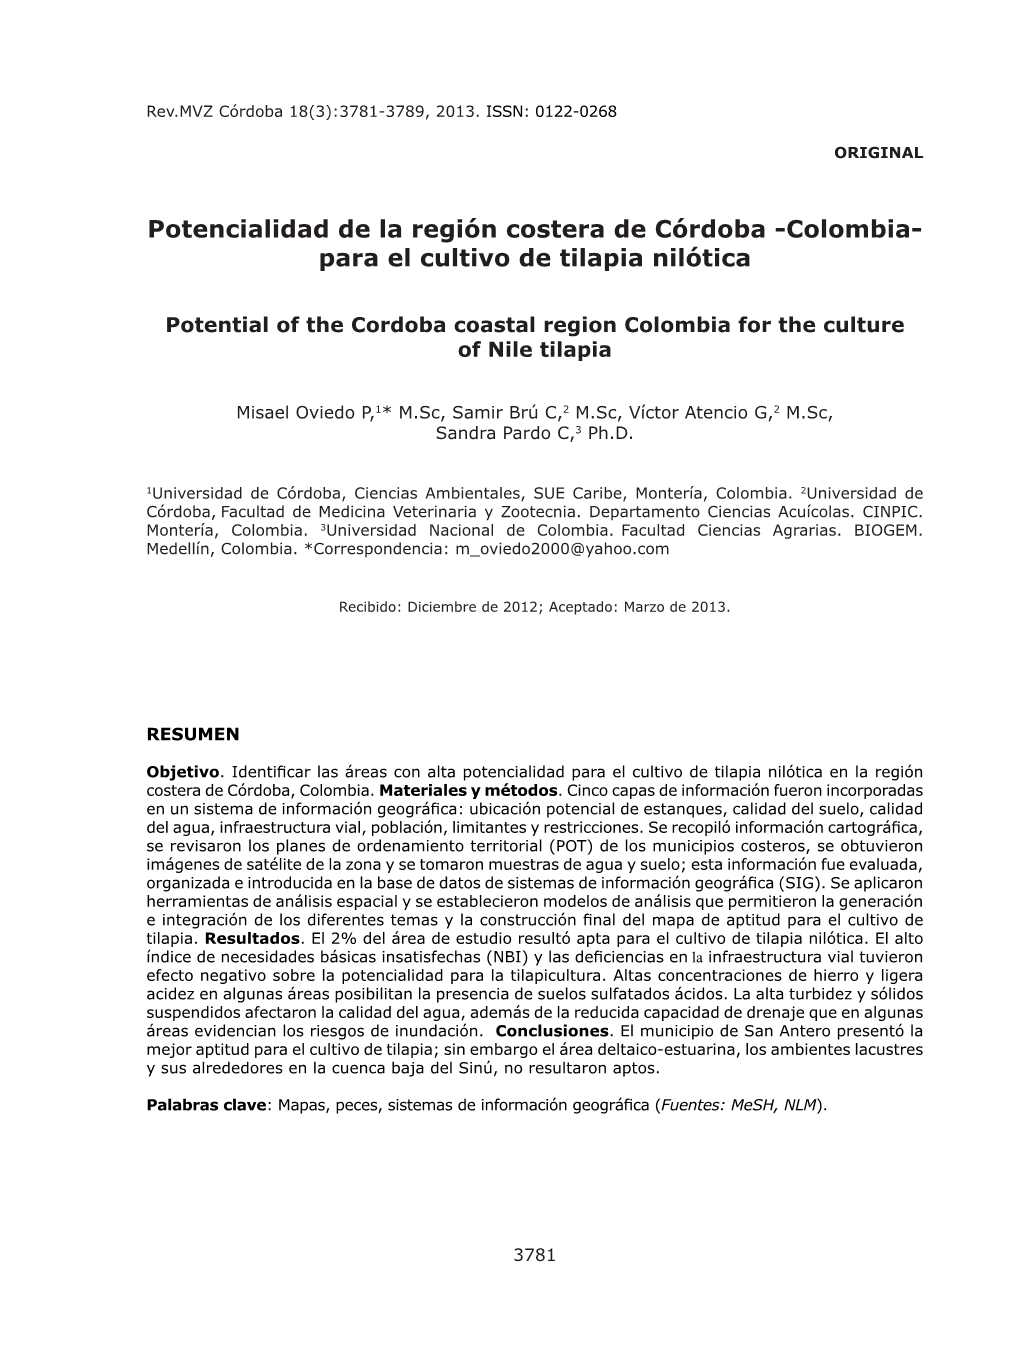 Potencialidad De La Región Costera De Córdoba -Colombia- Para El Cultivo De Tilapia Nilótica